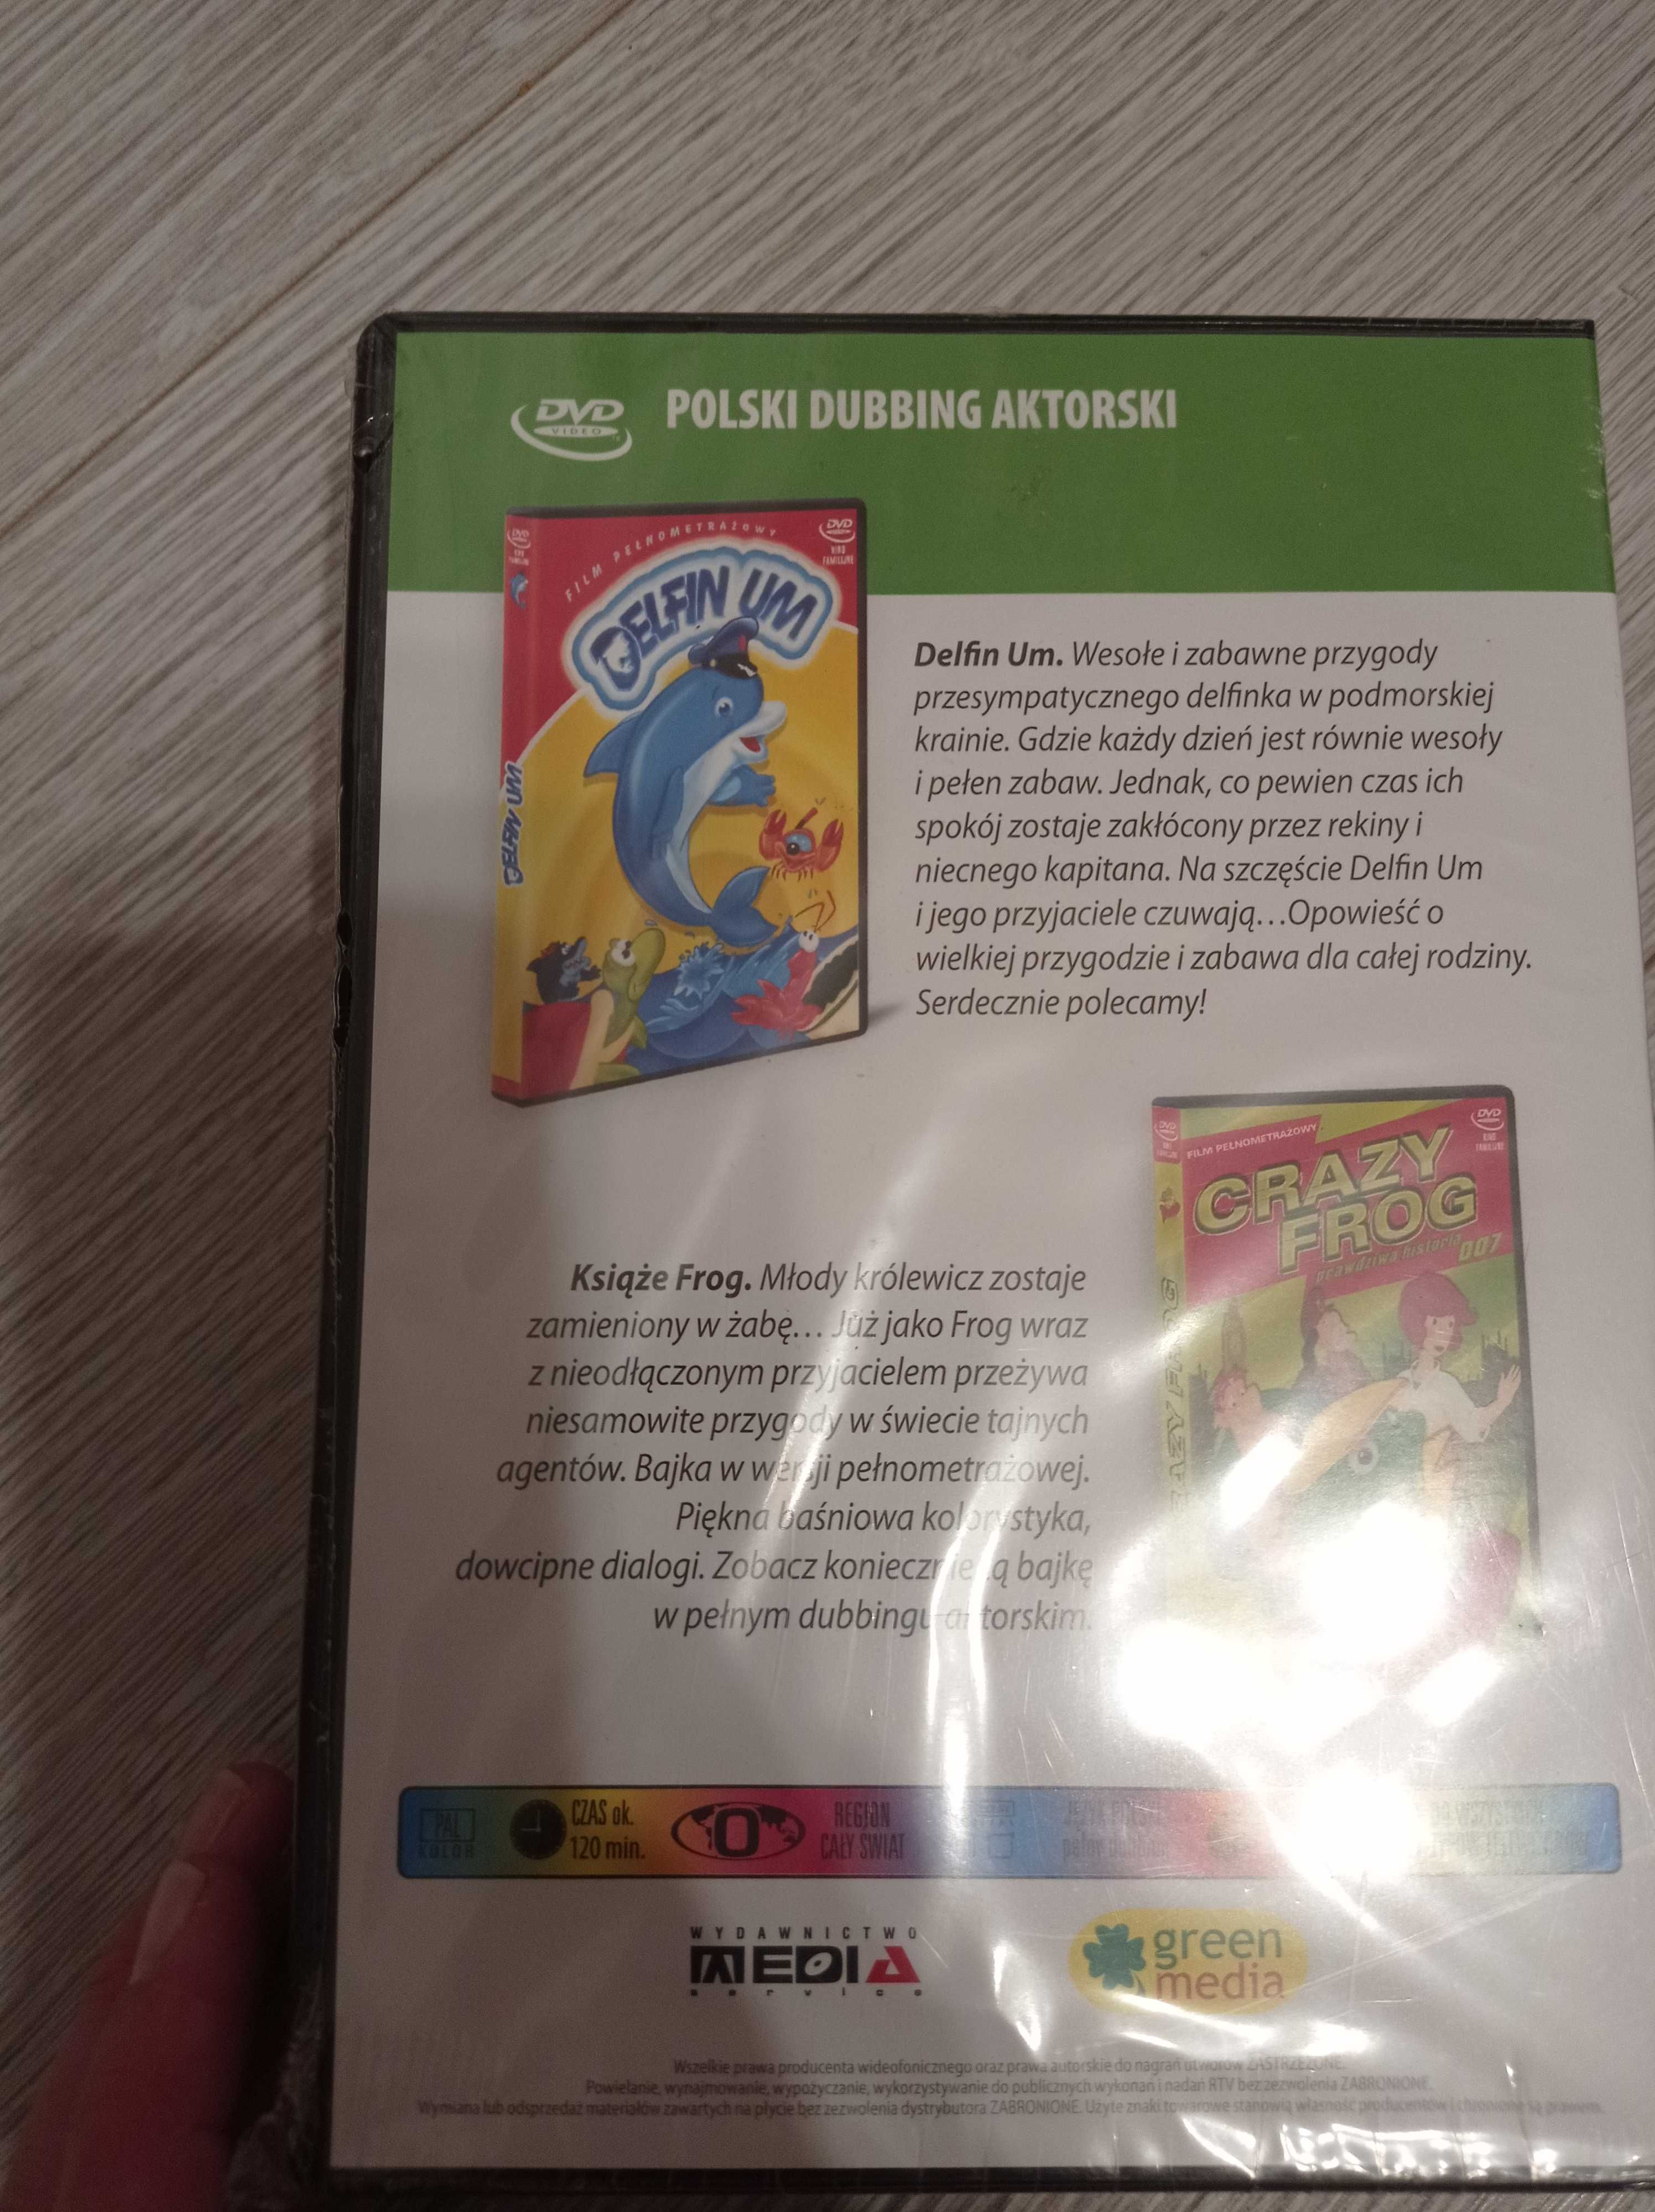 Płyta DVD Bajki dla dzieci Pingwiny, crazy frog, Trzech muszkieterów,